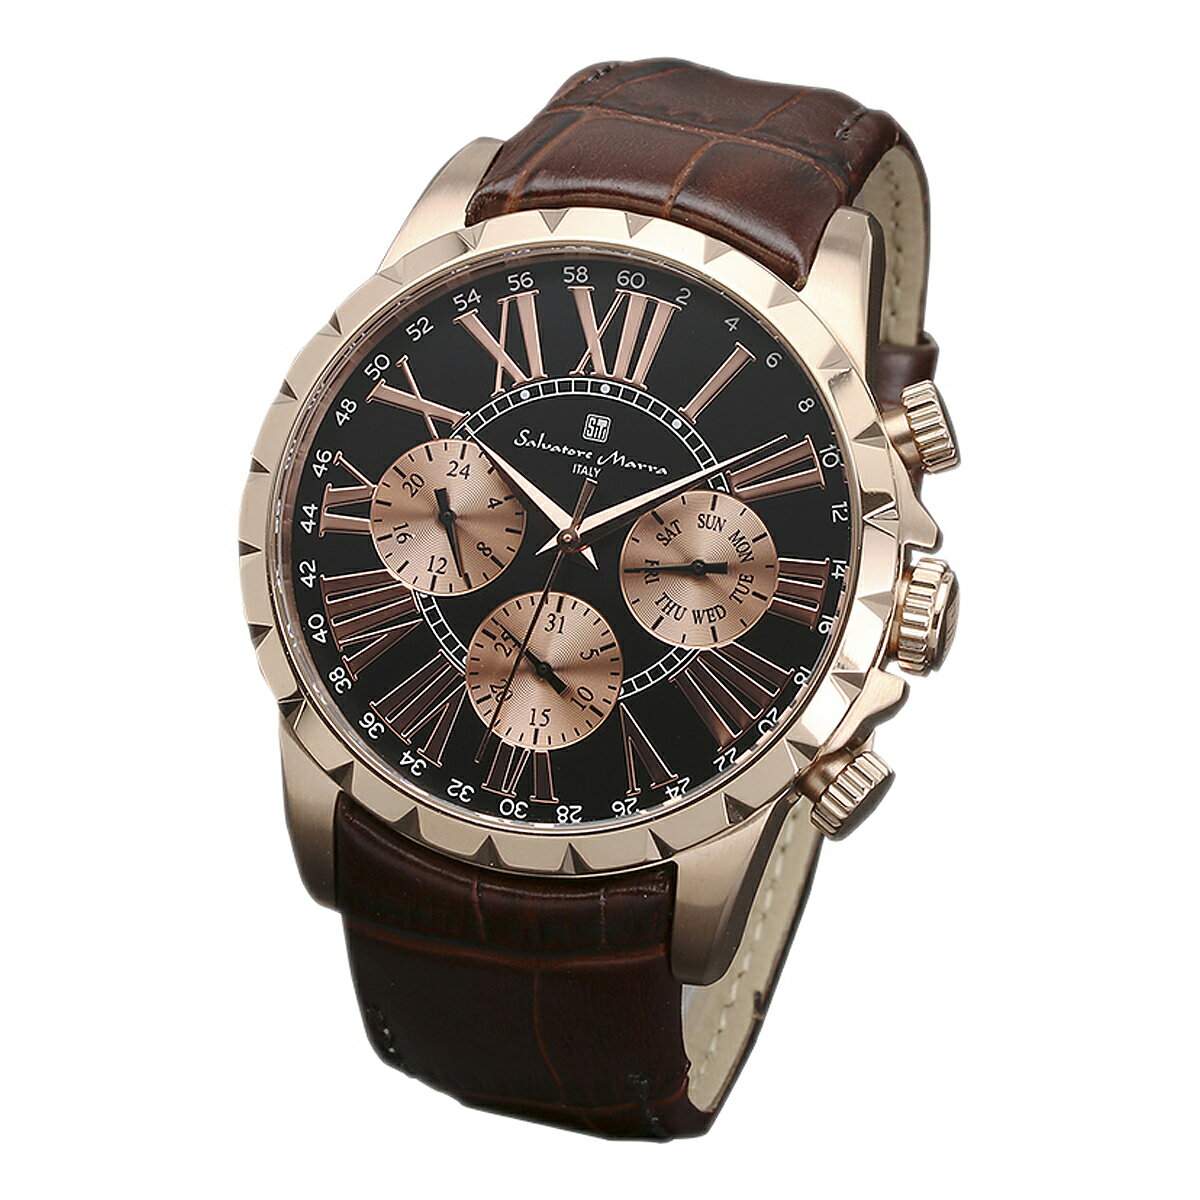 サルバトーレマーラ Salavatore Marra 腕時計 SM15103-PGBK クオーツ メンズ腕時計 レザーベルト ローマ数字 アナログ表示 10気圧防水 紳士用 時計